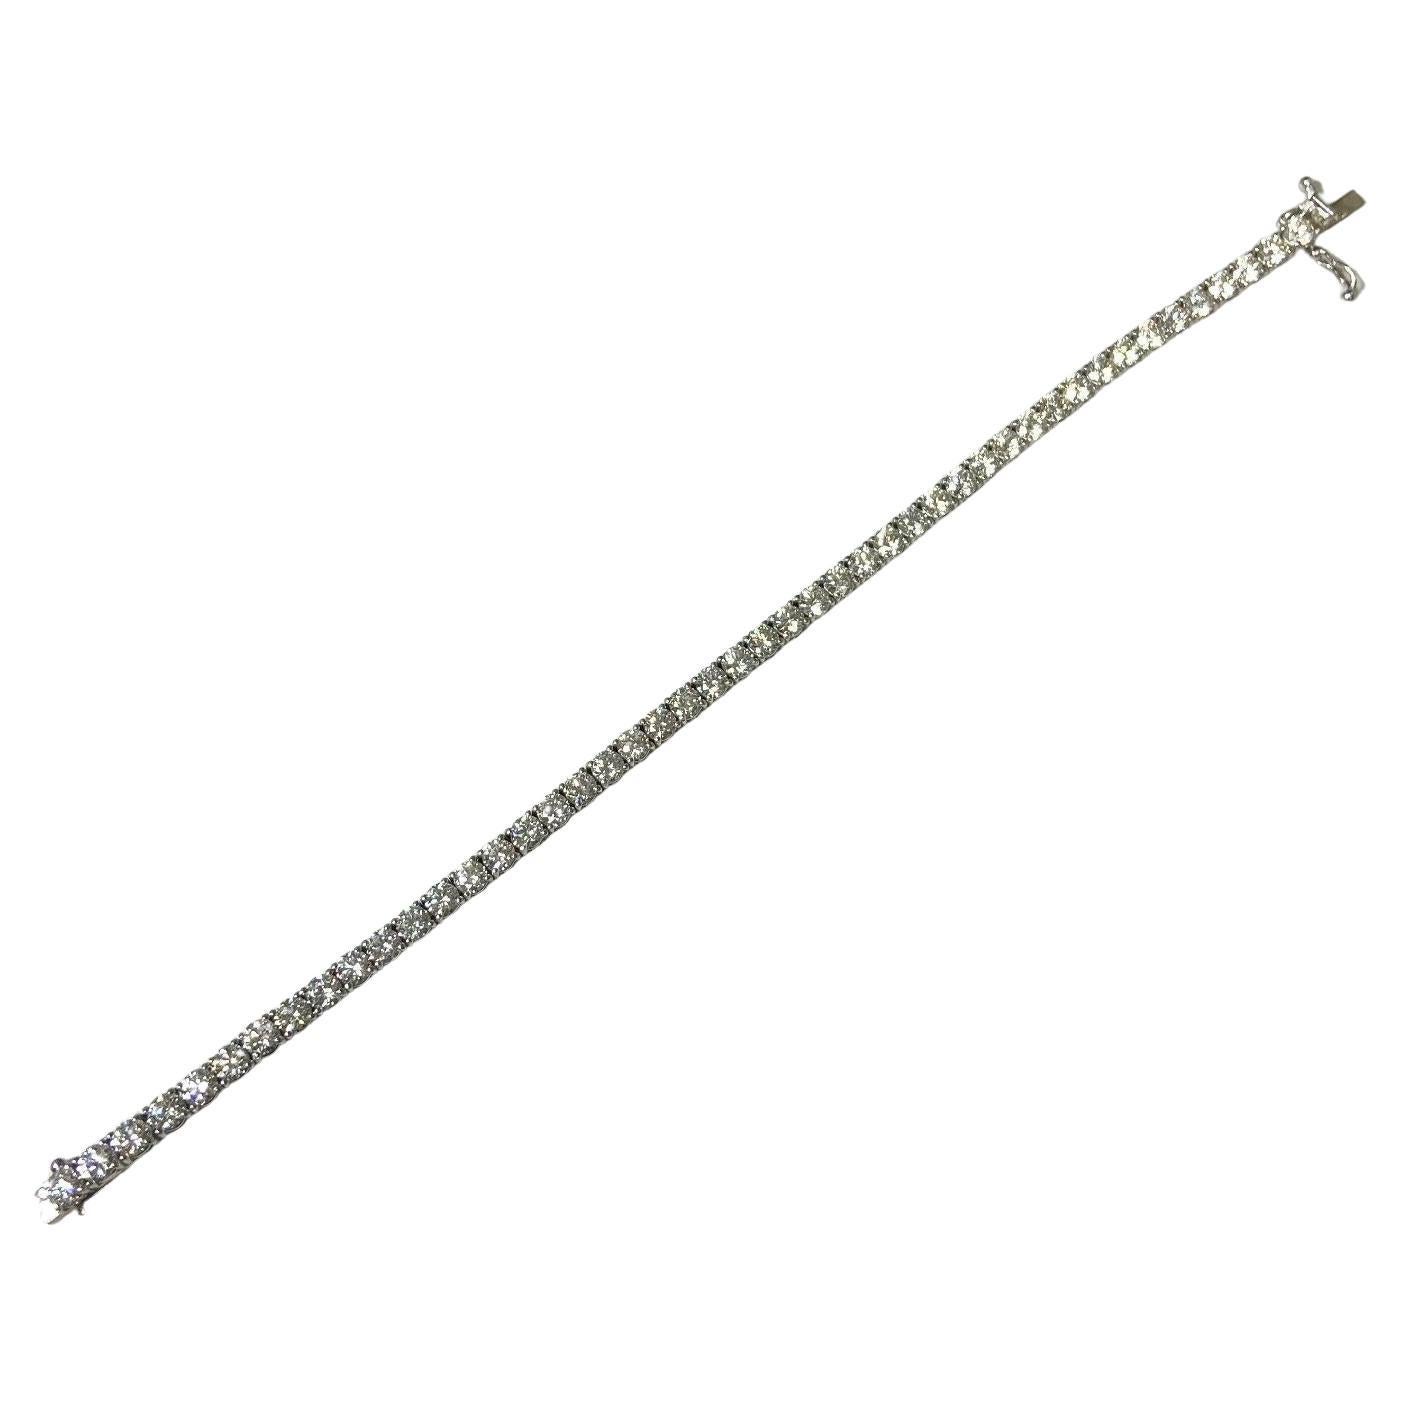 14k White Gold Diamond Tennis Bracelet Weighing 8.67 Ctw